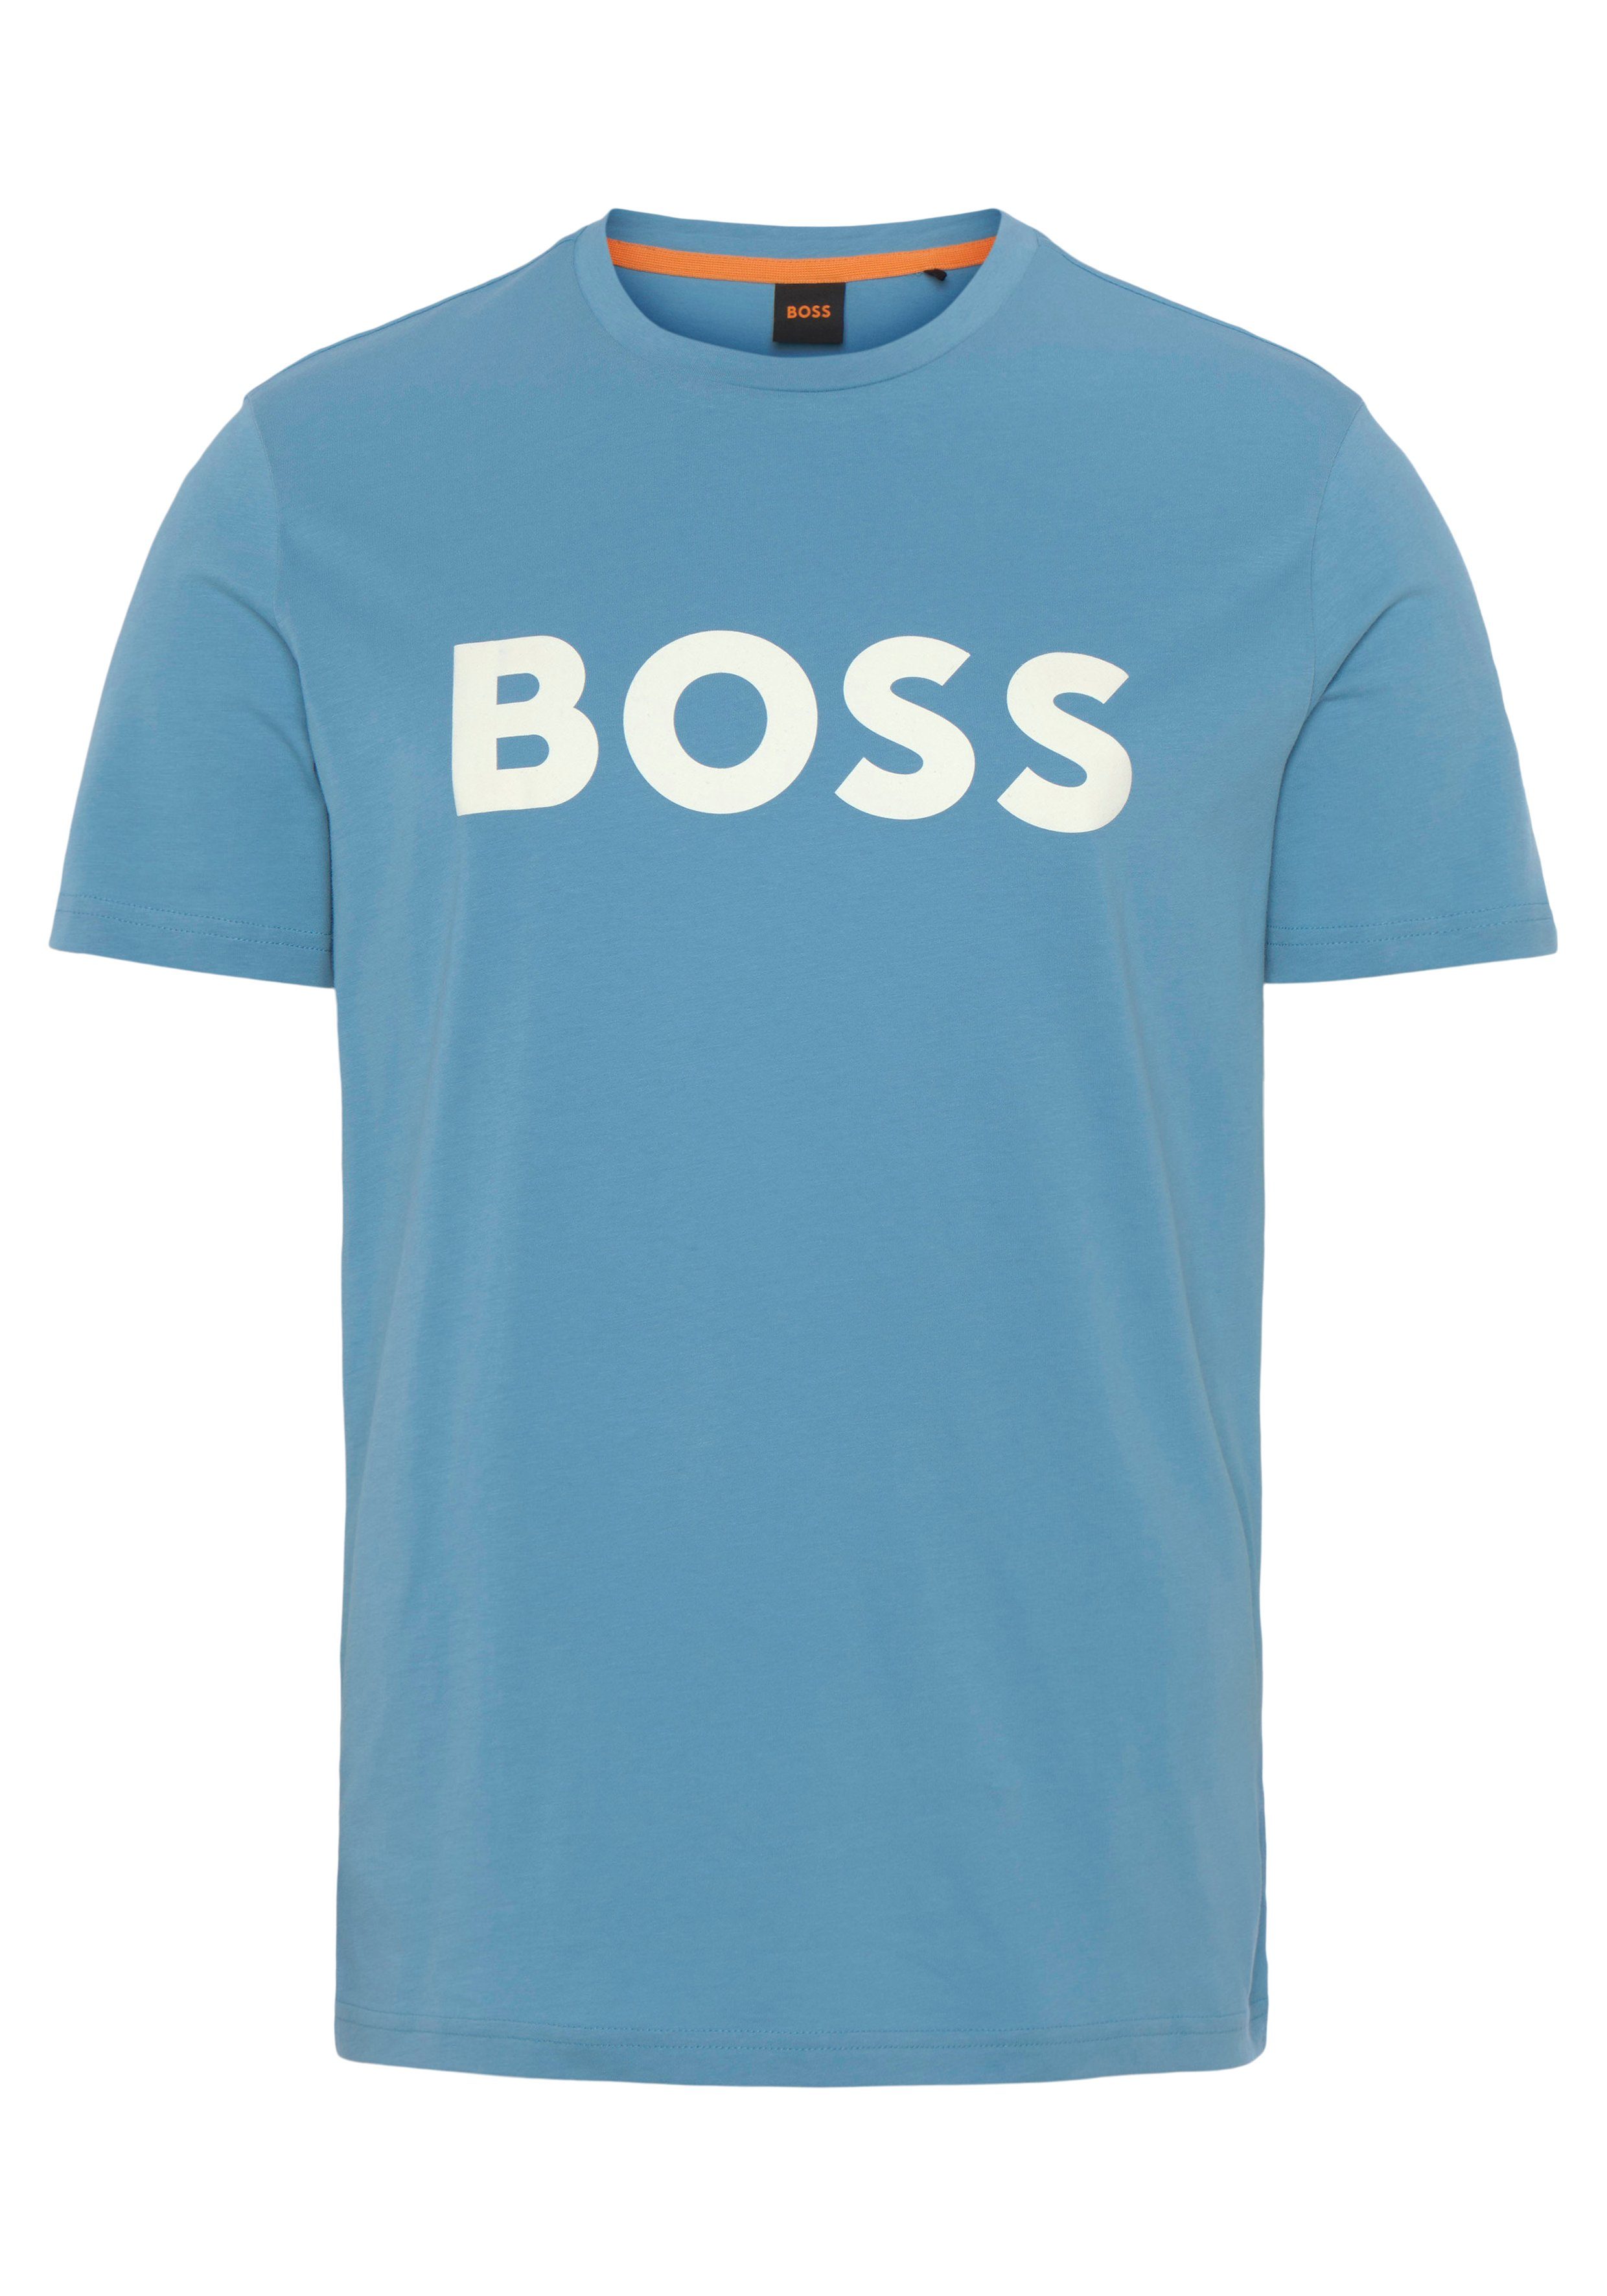 BOSS ORANGE T-Shirt Thinking 1 493 Open Druck 01 10246016 großem Brust auf der BOSS mit Blue